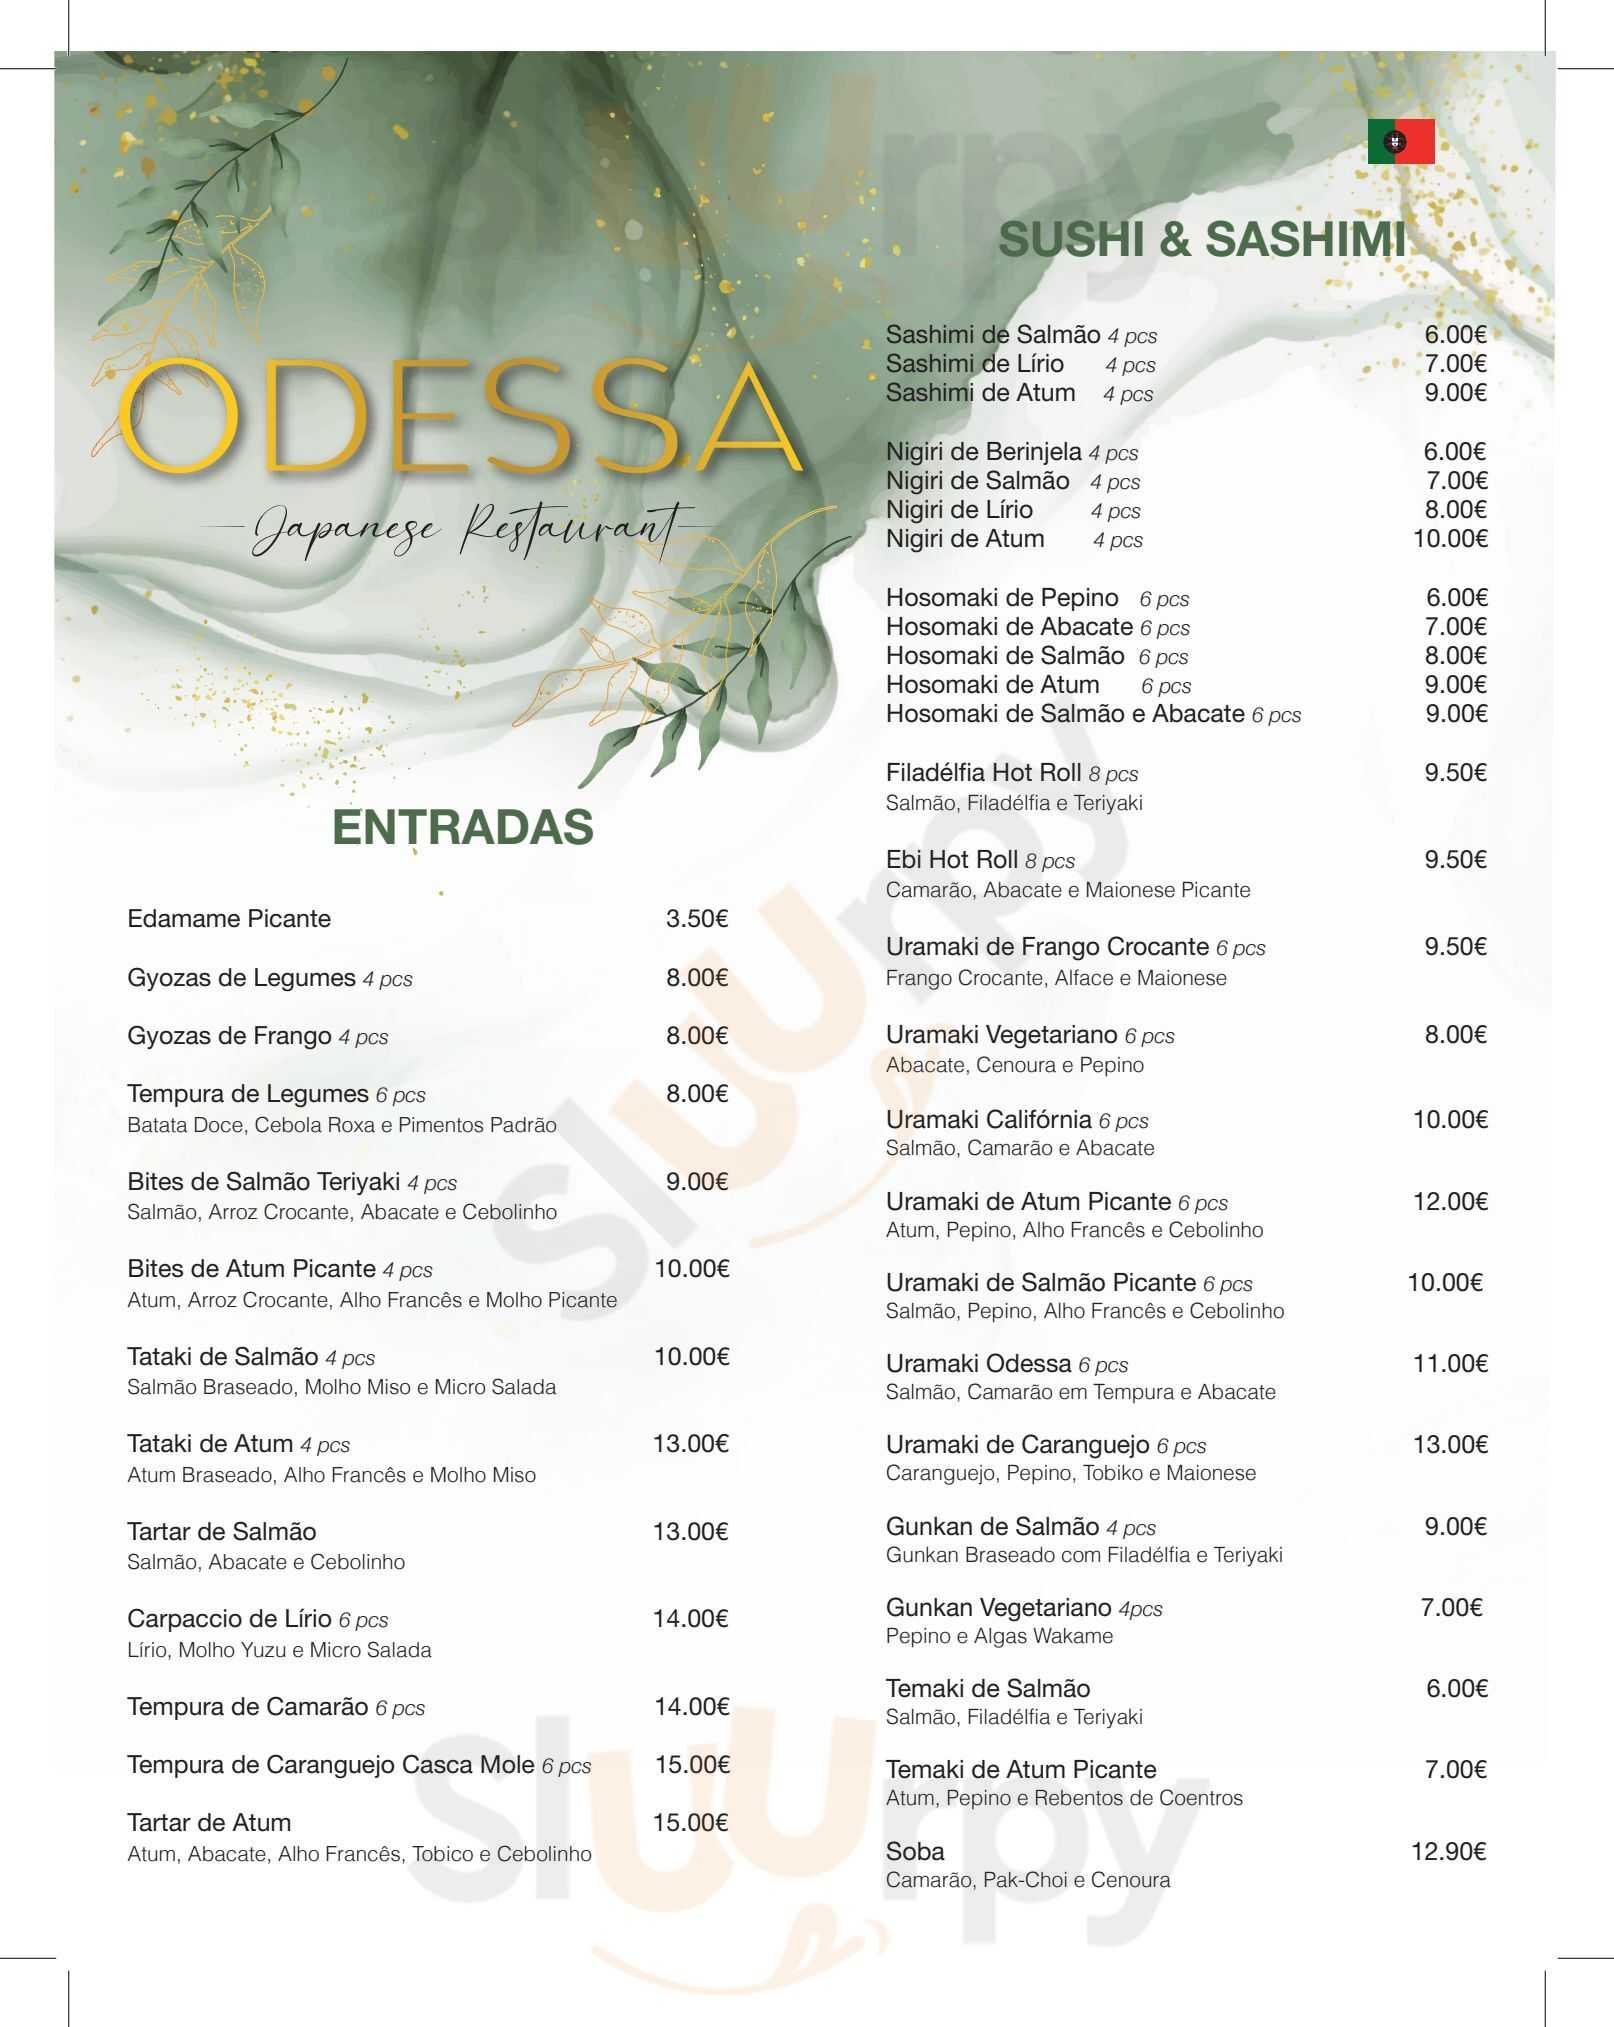 Odessa Sushi Restaurant Albufeira Menu - 1